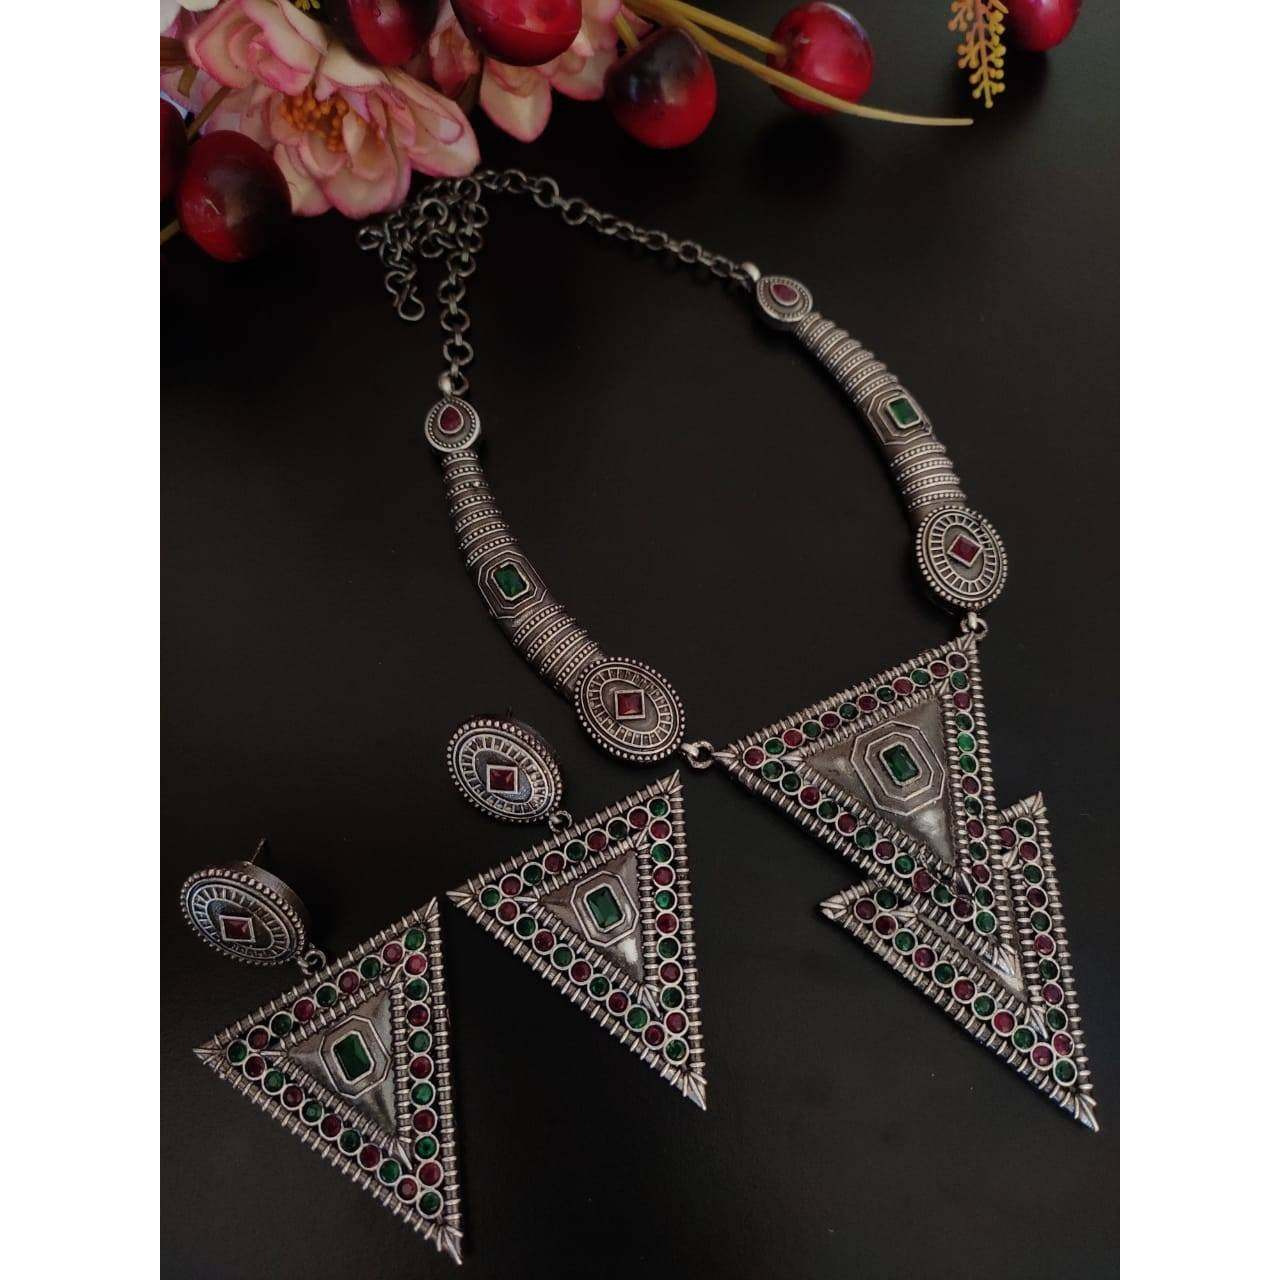 SLA Silver Oxidized Necklace Set, Trendy Indian Jewellery Set, Boho Tribal Fashion Jewelry, Indian Oxidized Jewelry Set, Oxidised Necklace